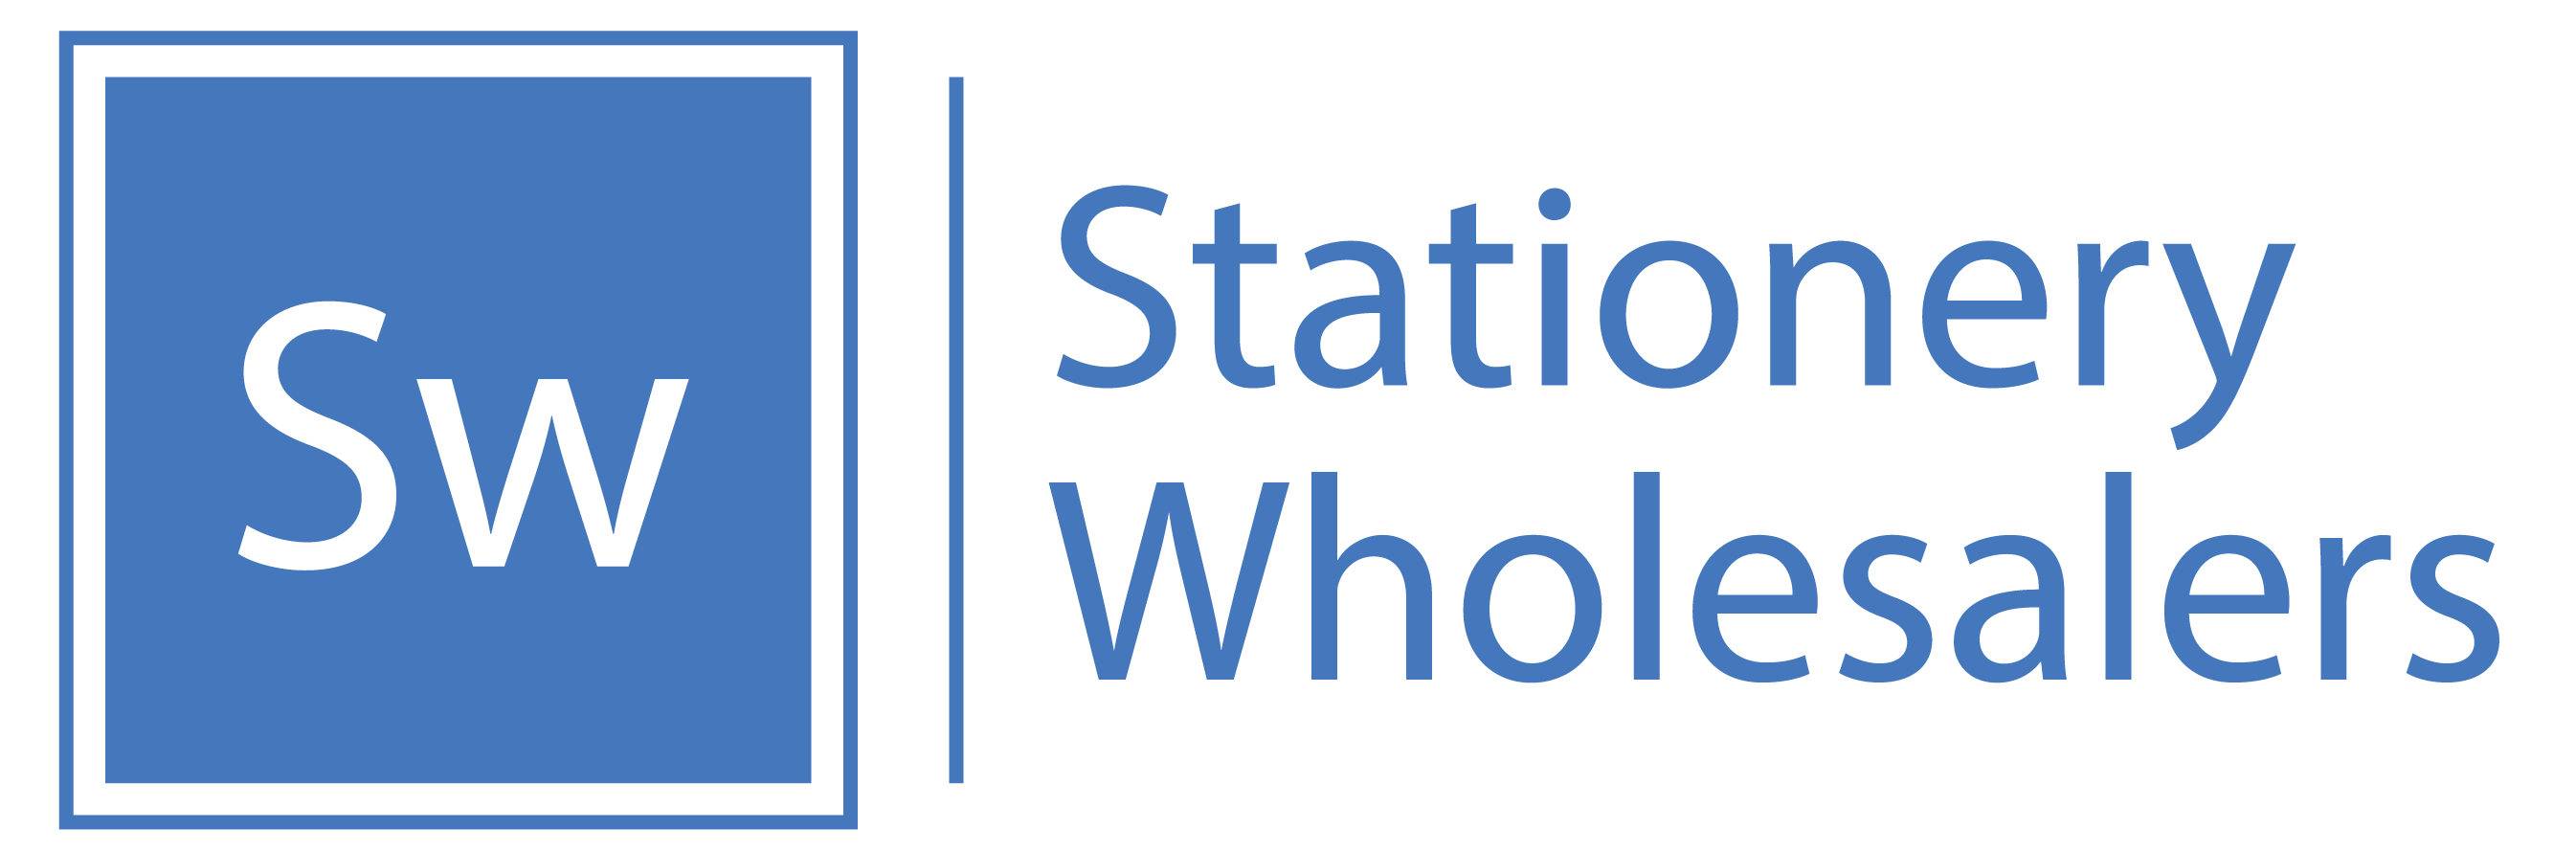 Stationery-Wholesalers logo